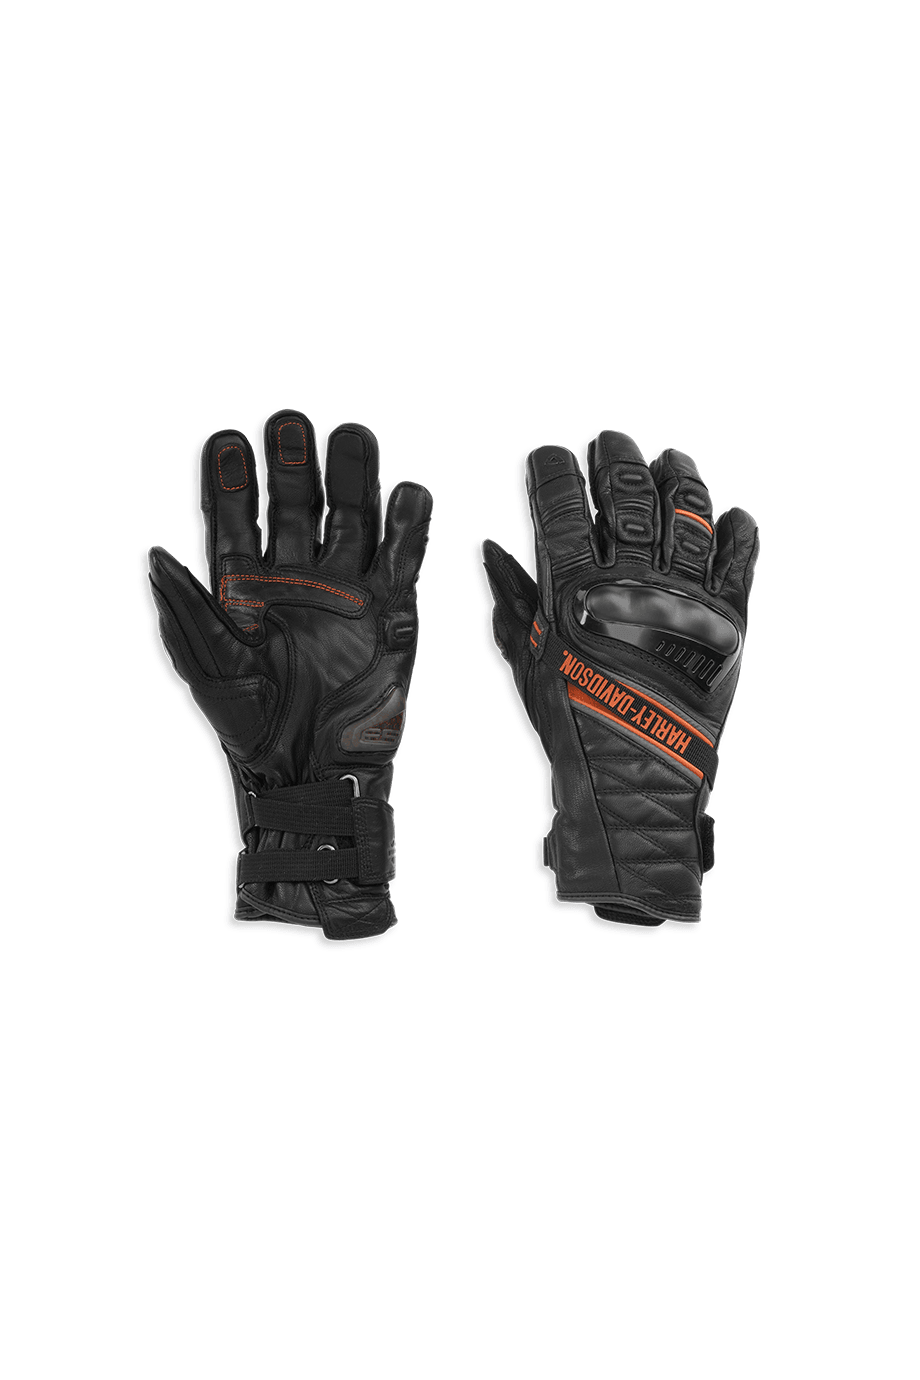 Harley-Davidson® Men's Passage Adventure Gauntlet Gloves